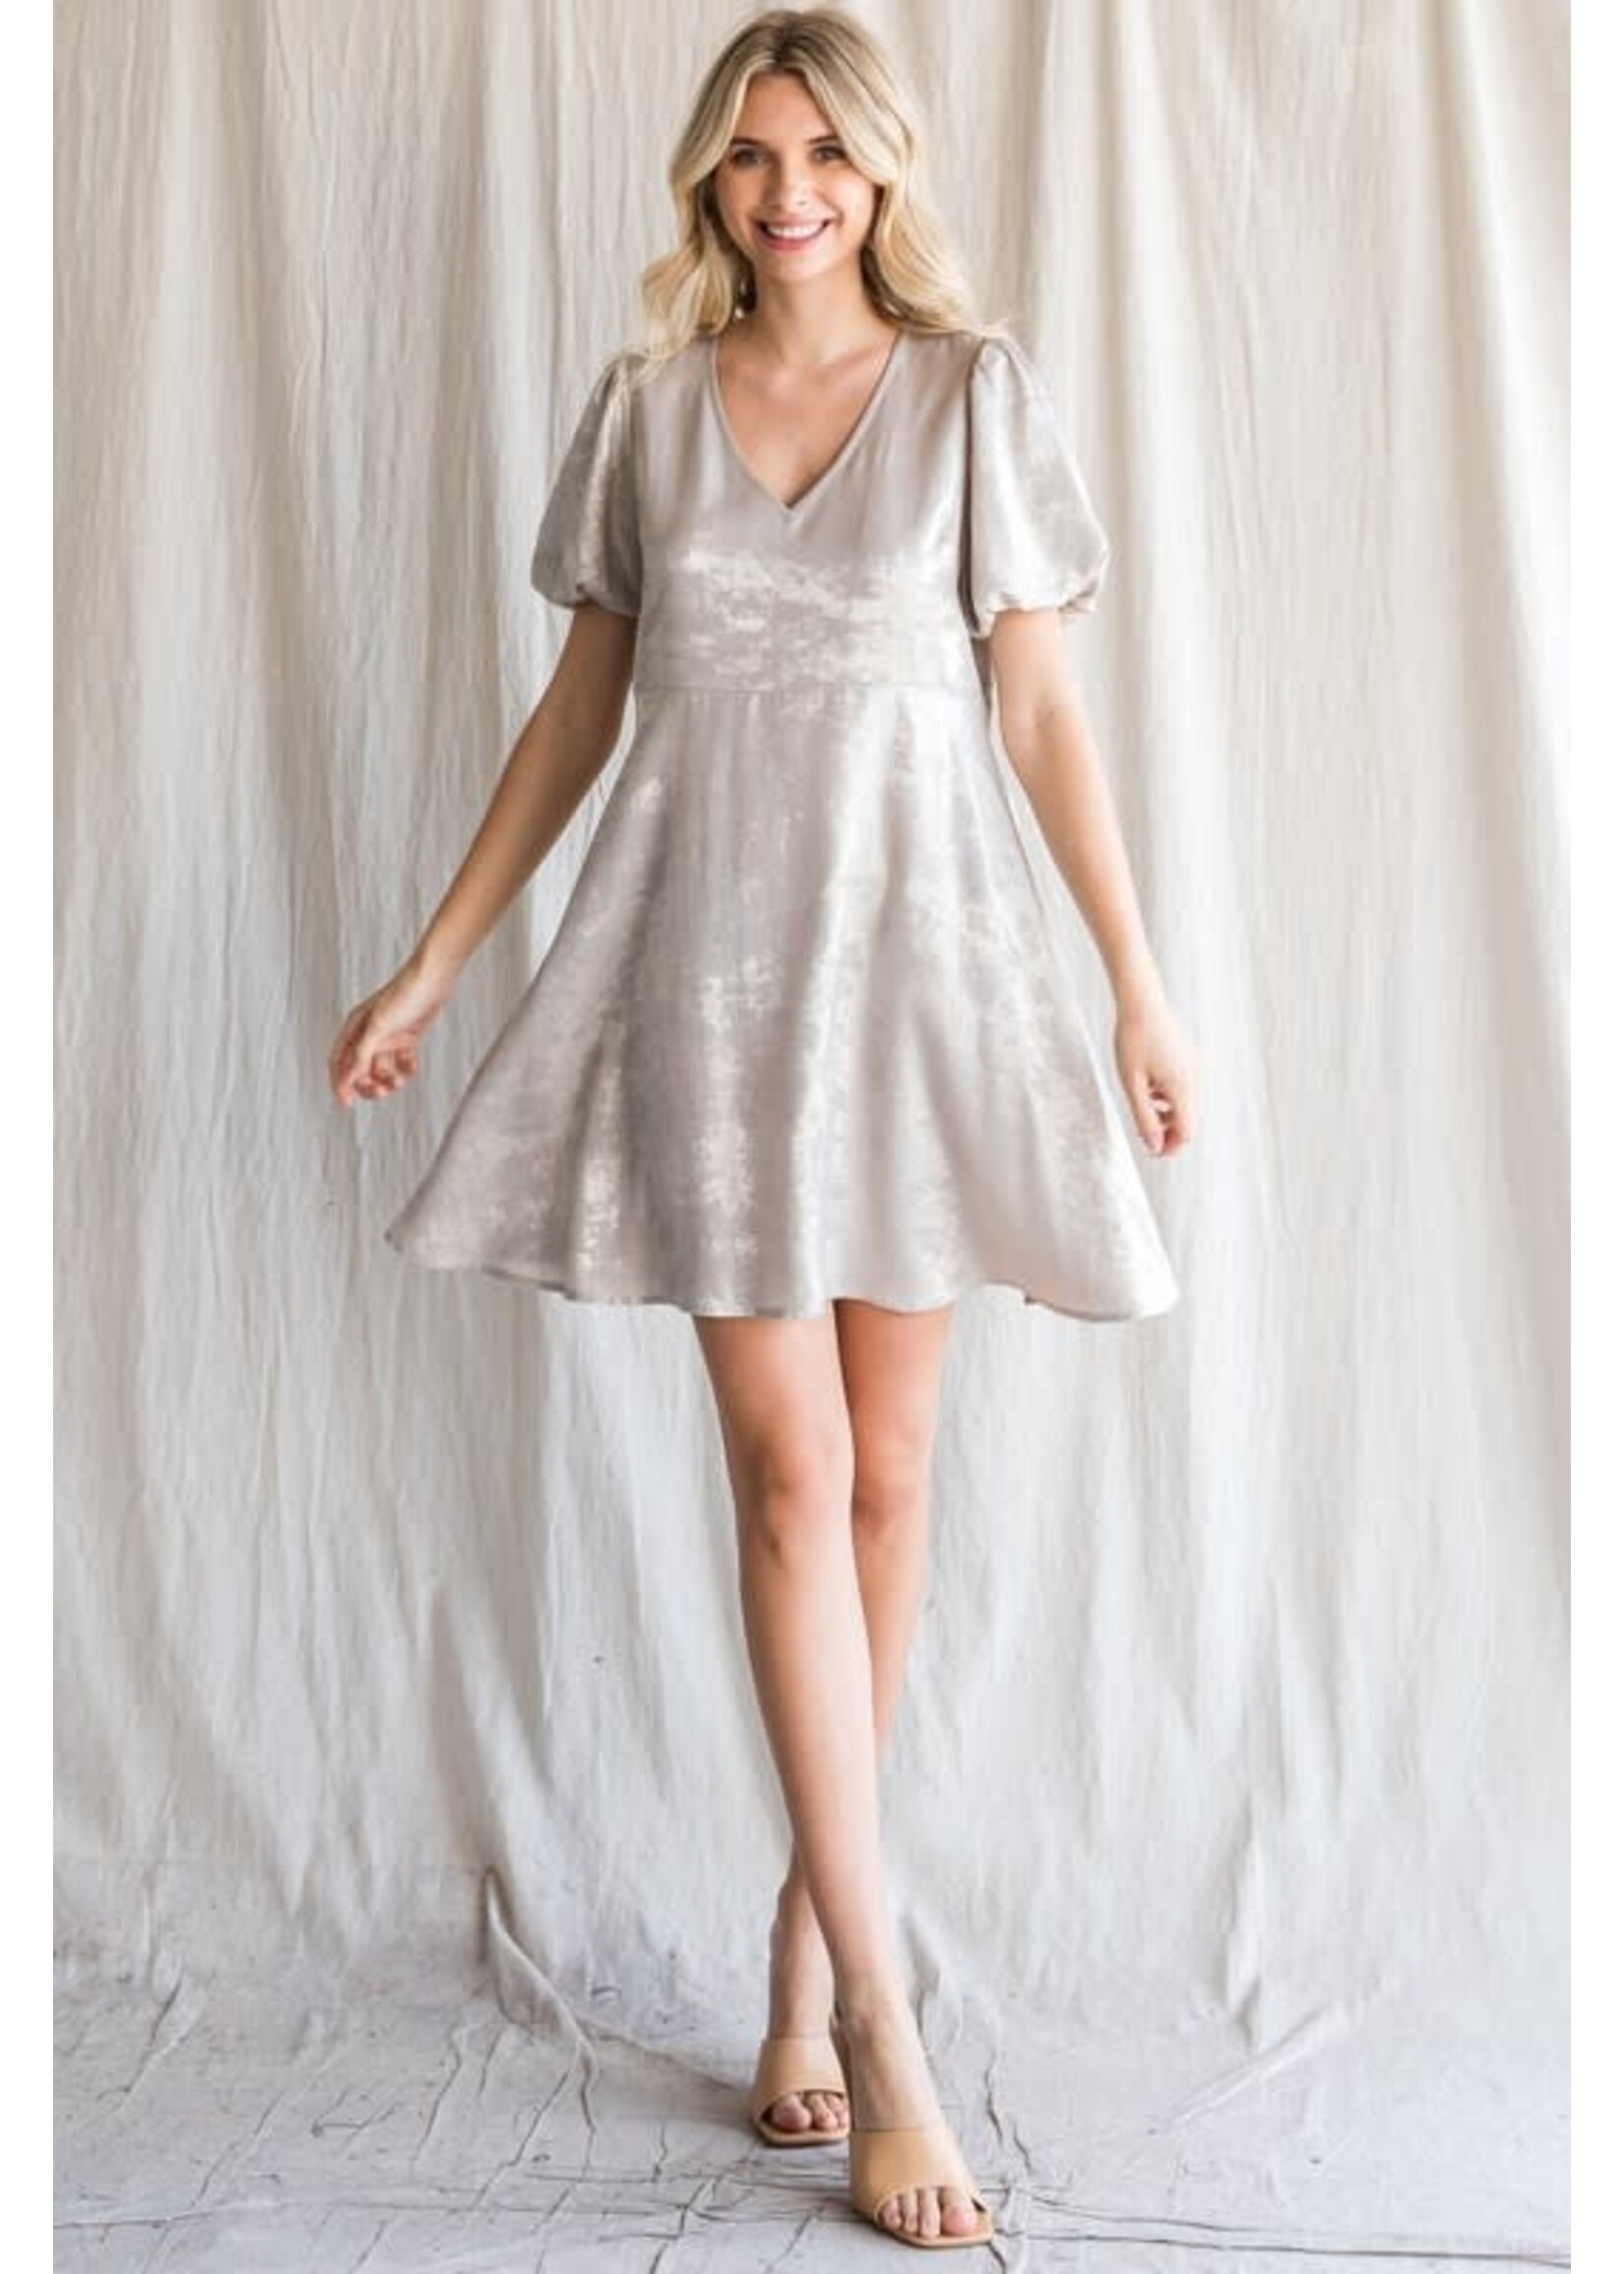 jodifl Metallic Short Dress W/ Puff Sleeve -